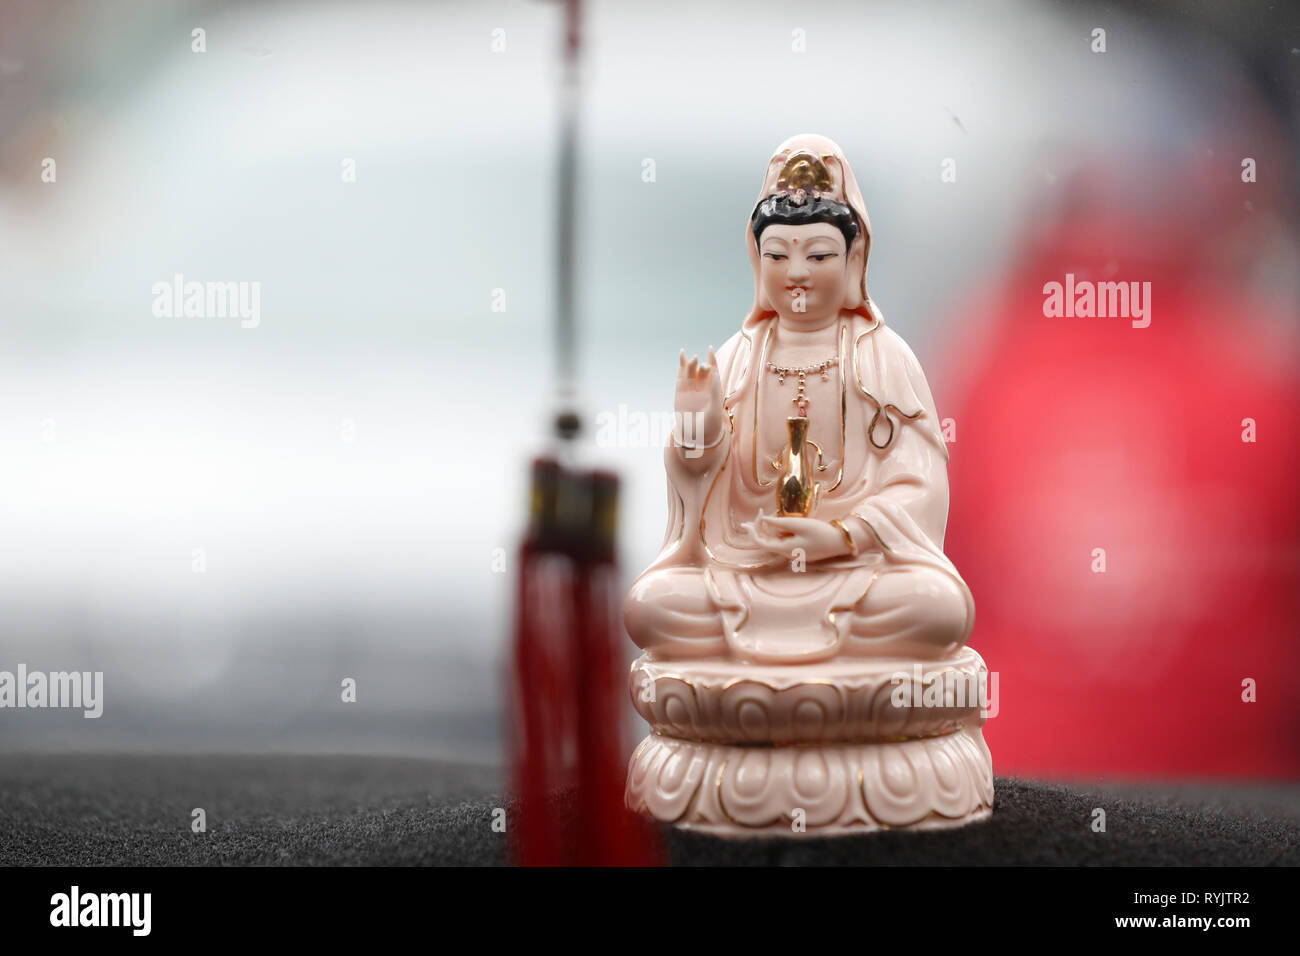 Quan bin, der Bodhisattva des Mitgefühls oder der Göttin der Barmherzigkeit. Talisman Schutz in einem Auto. Ho Chi Minh City. Vietnam. Stockfoto